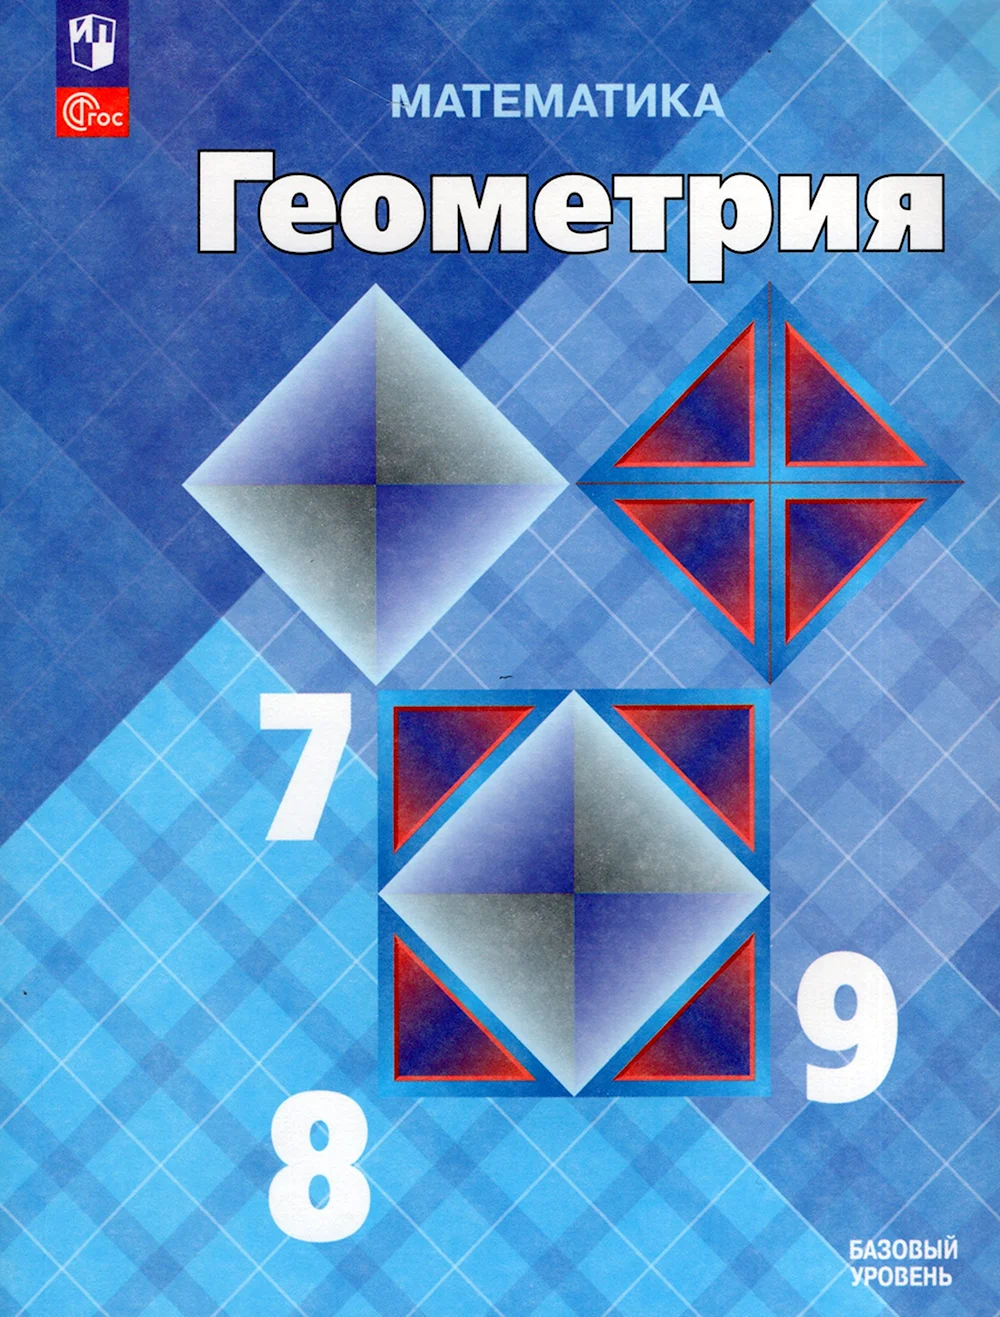 Геометрия 7-9 класс Атанасян учебник